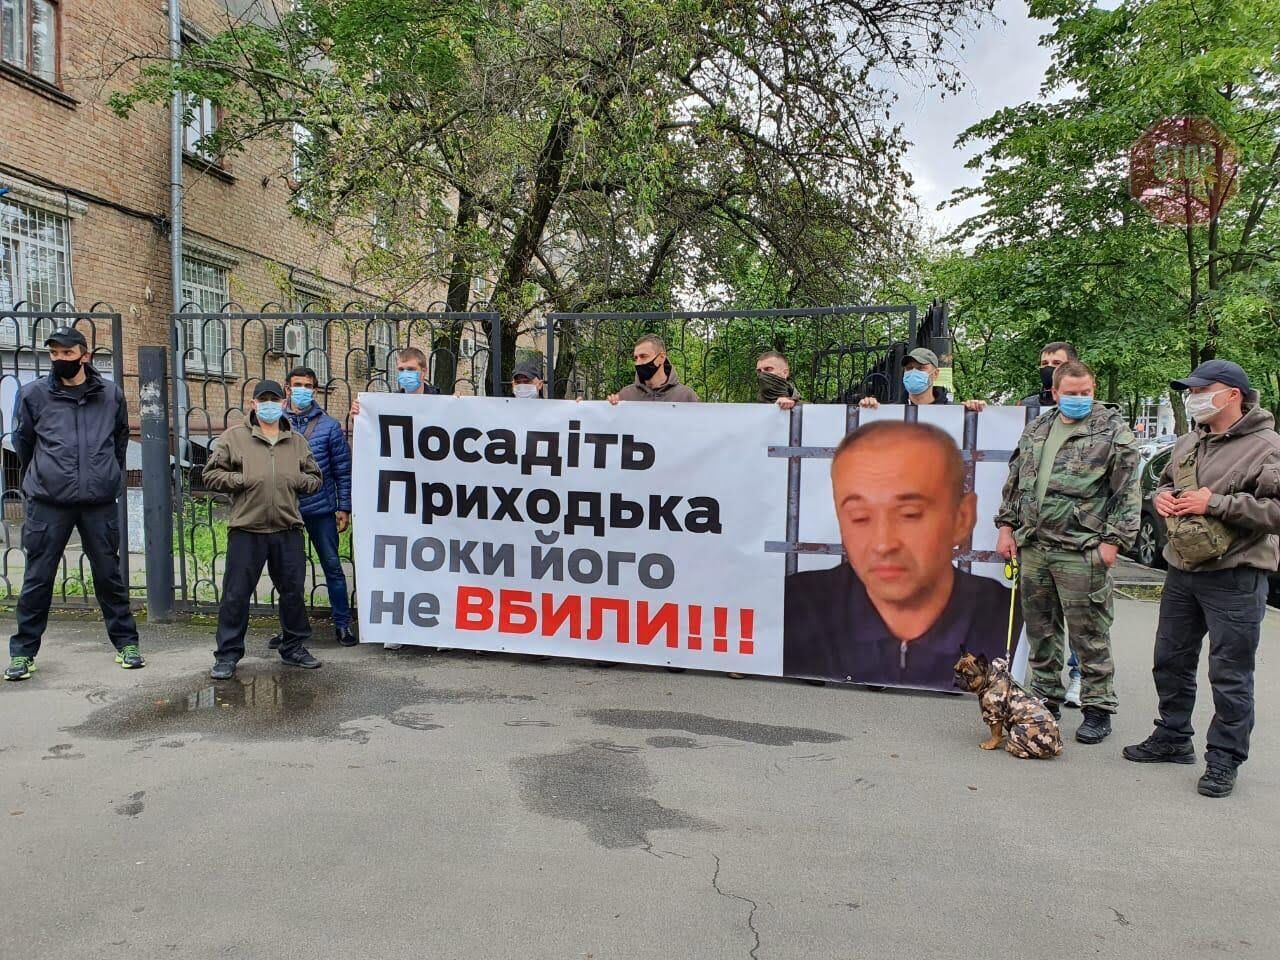  Фото: акція під Дарницьким судом у Києві у справі нардепа Приходька